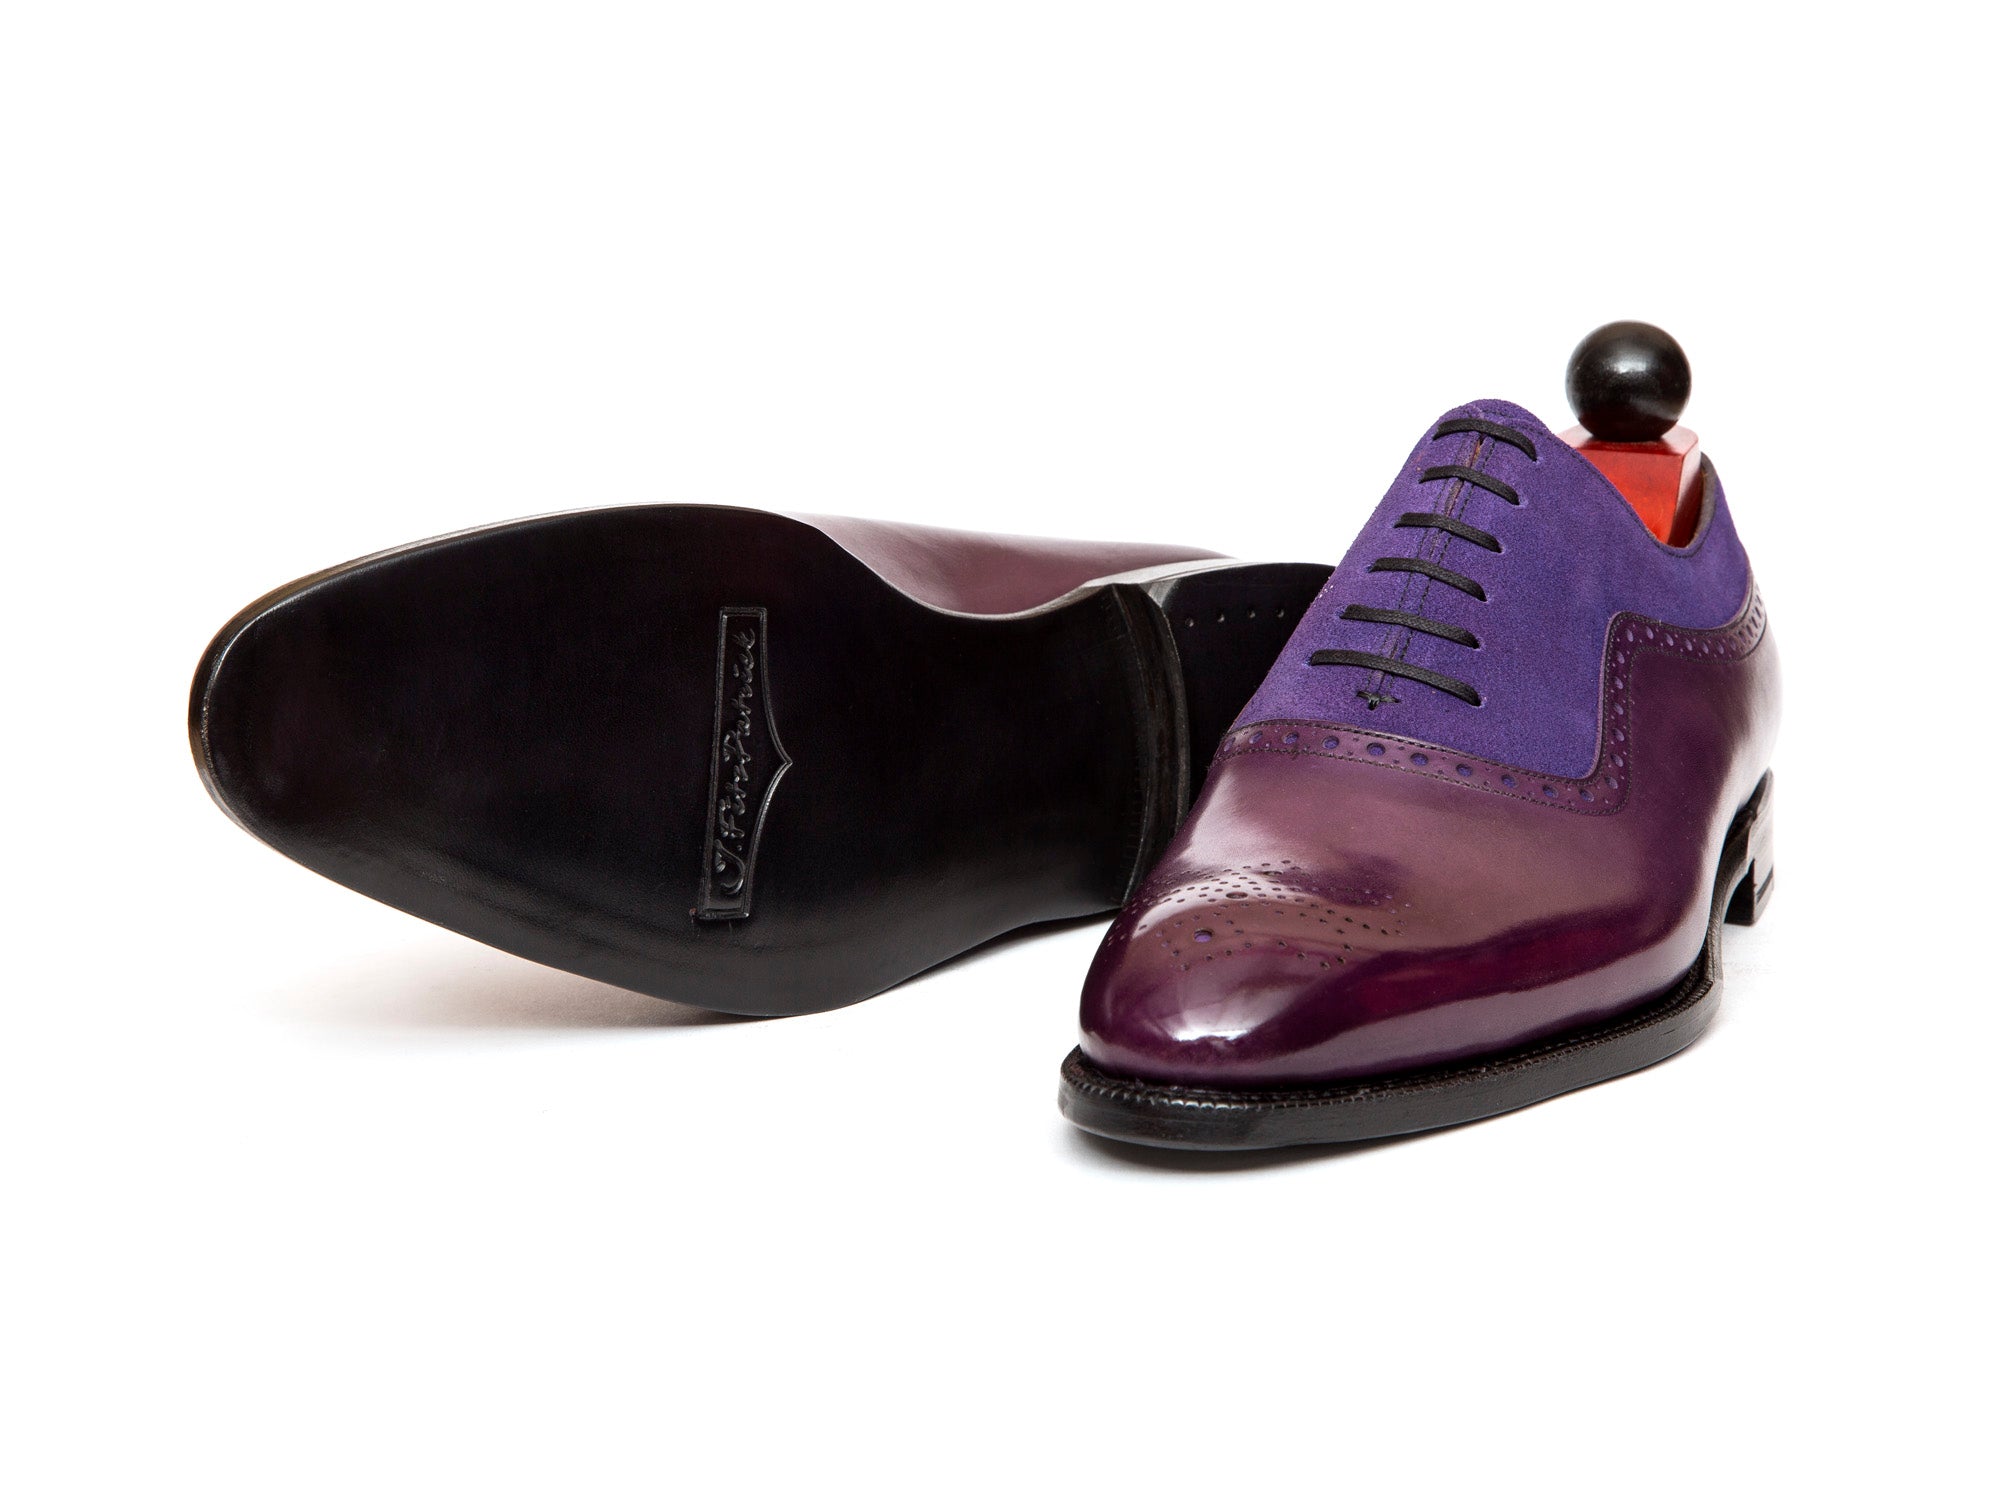 Roosevelt - MTO - Purple Calf / Purple Suede - NGT Last - Single Leather Sole